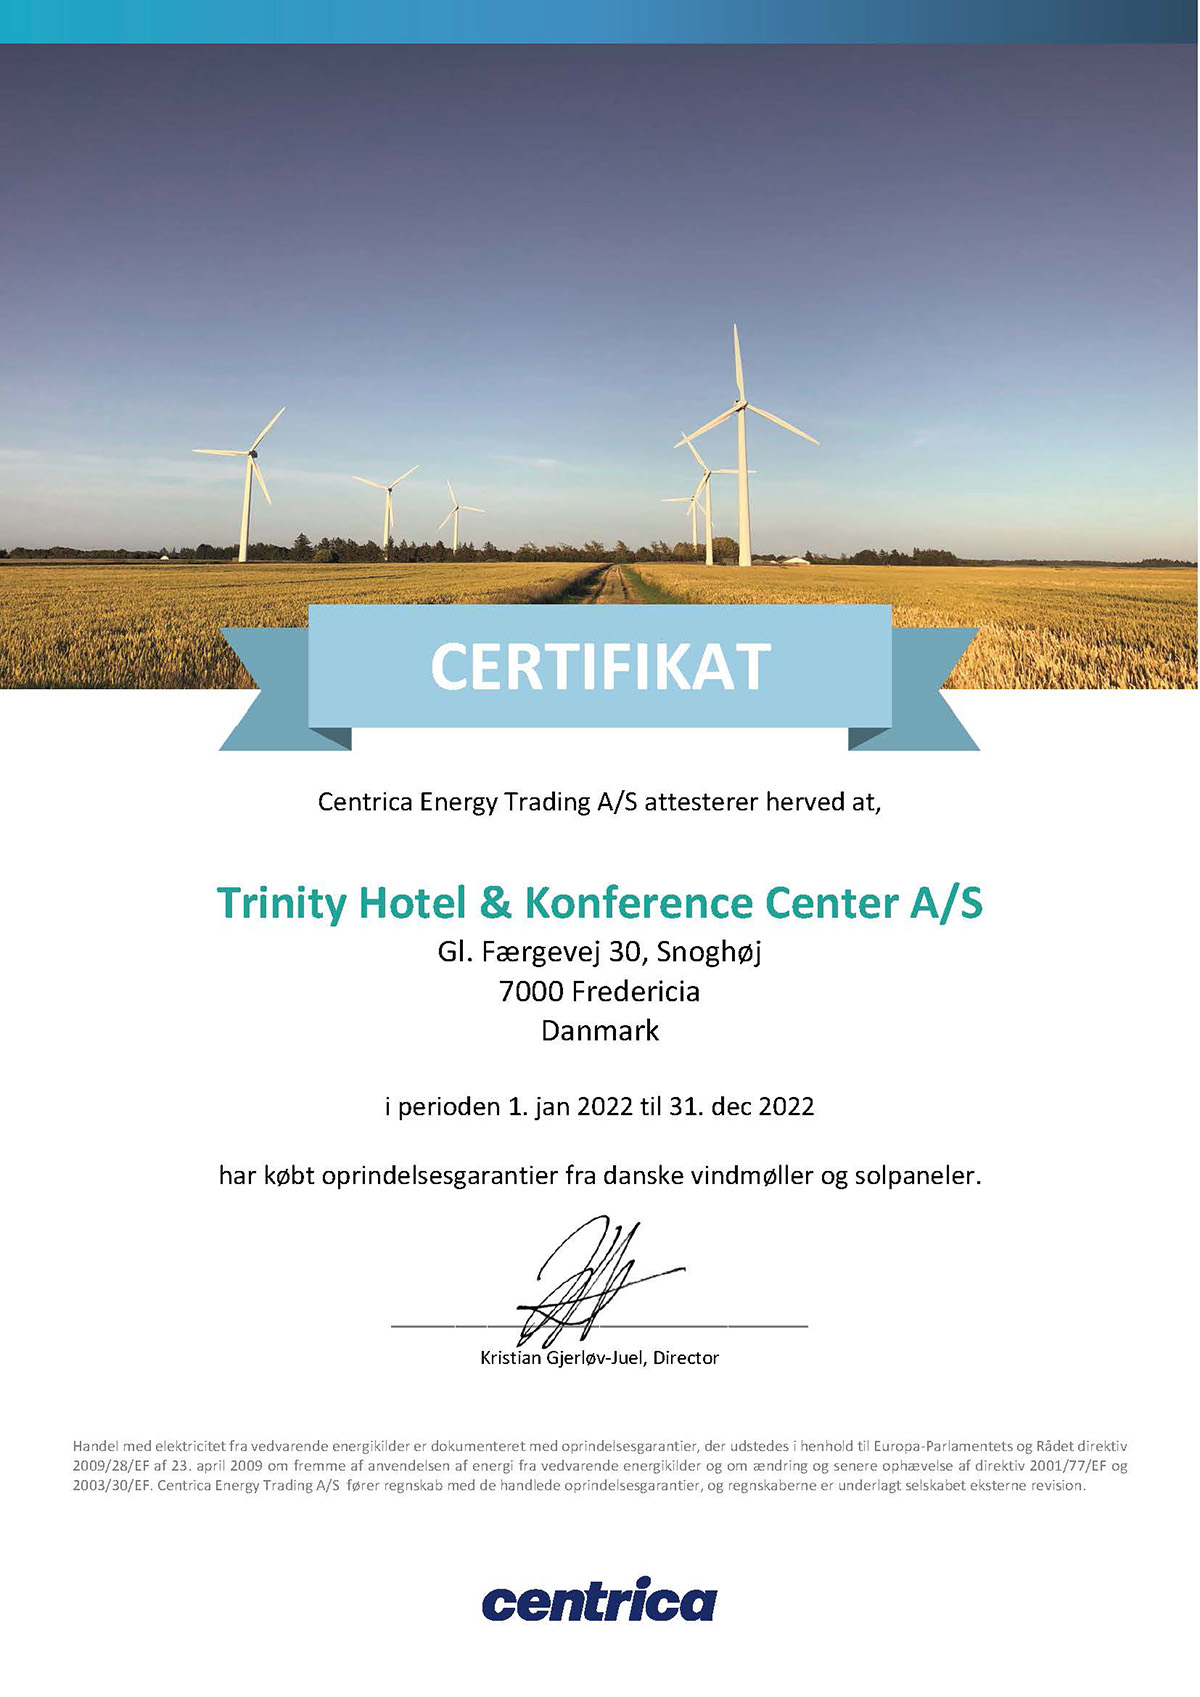 Certifikat på 100% vind- og solenergi